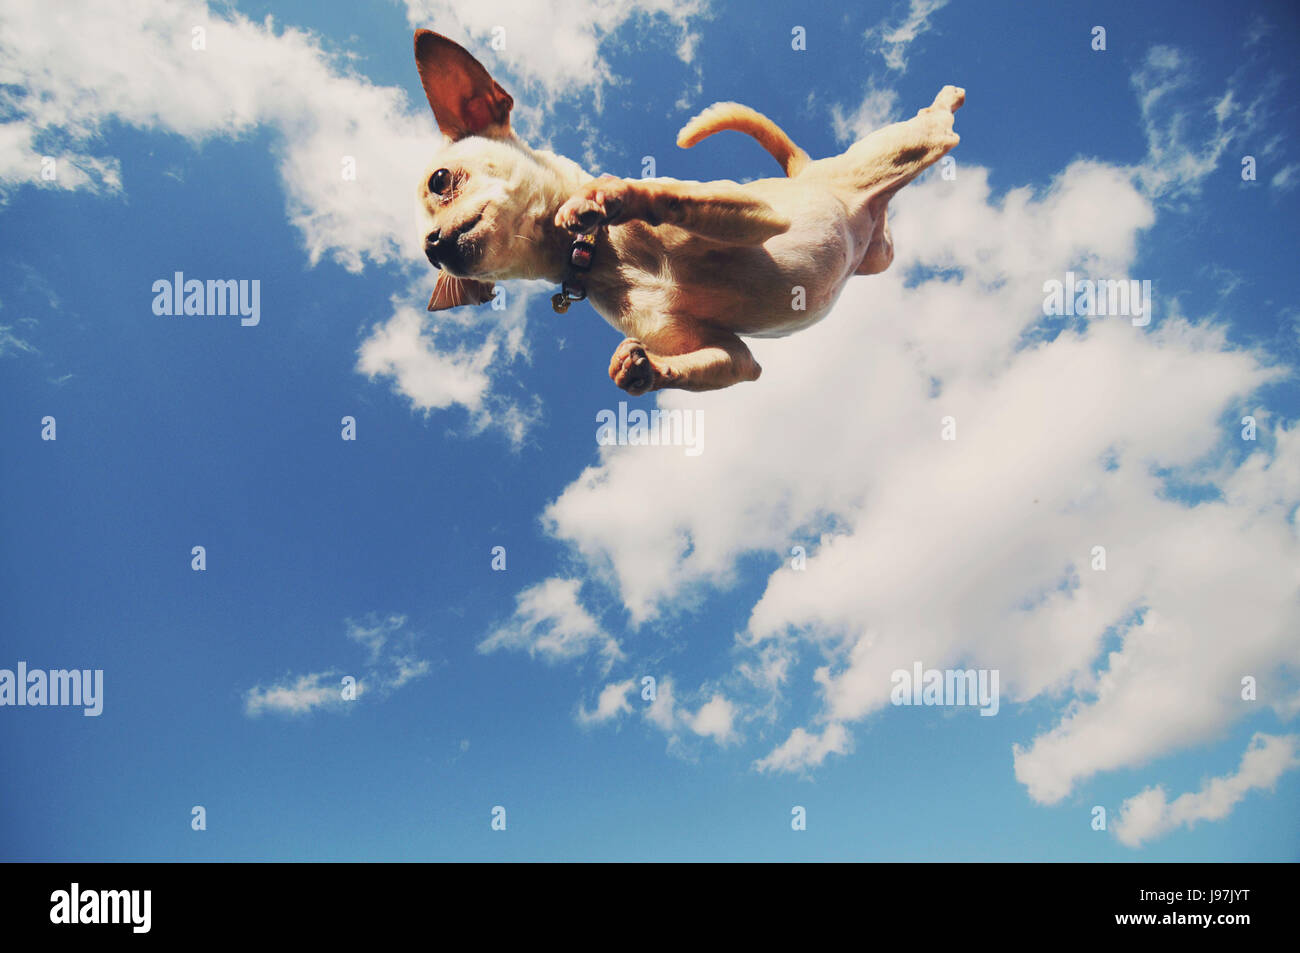 Cane volante immagini e fotografie stock ad alta risoluzione - Alamy